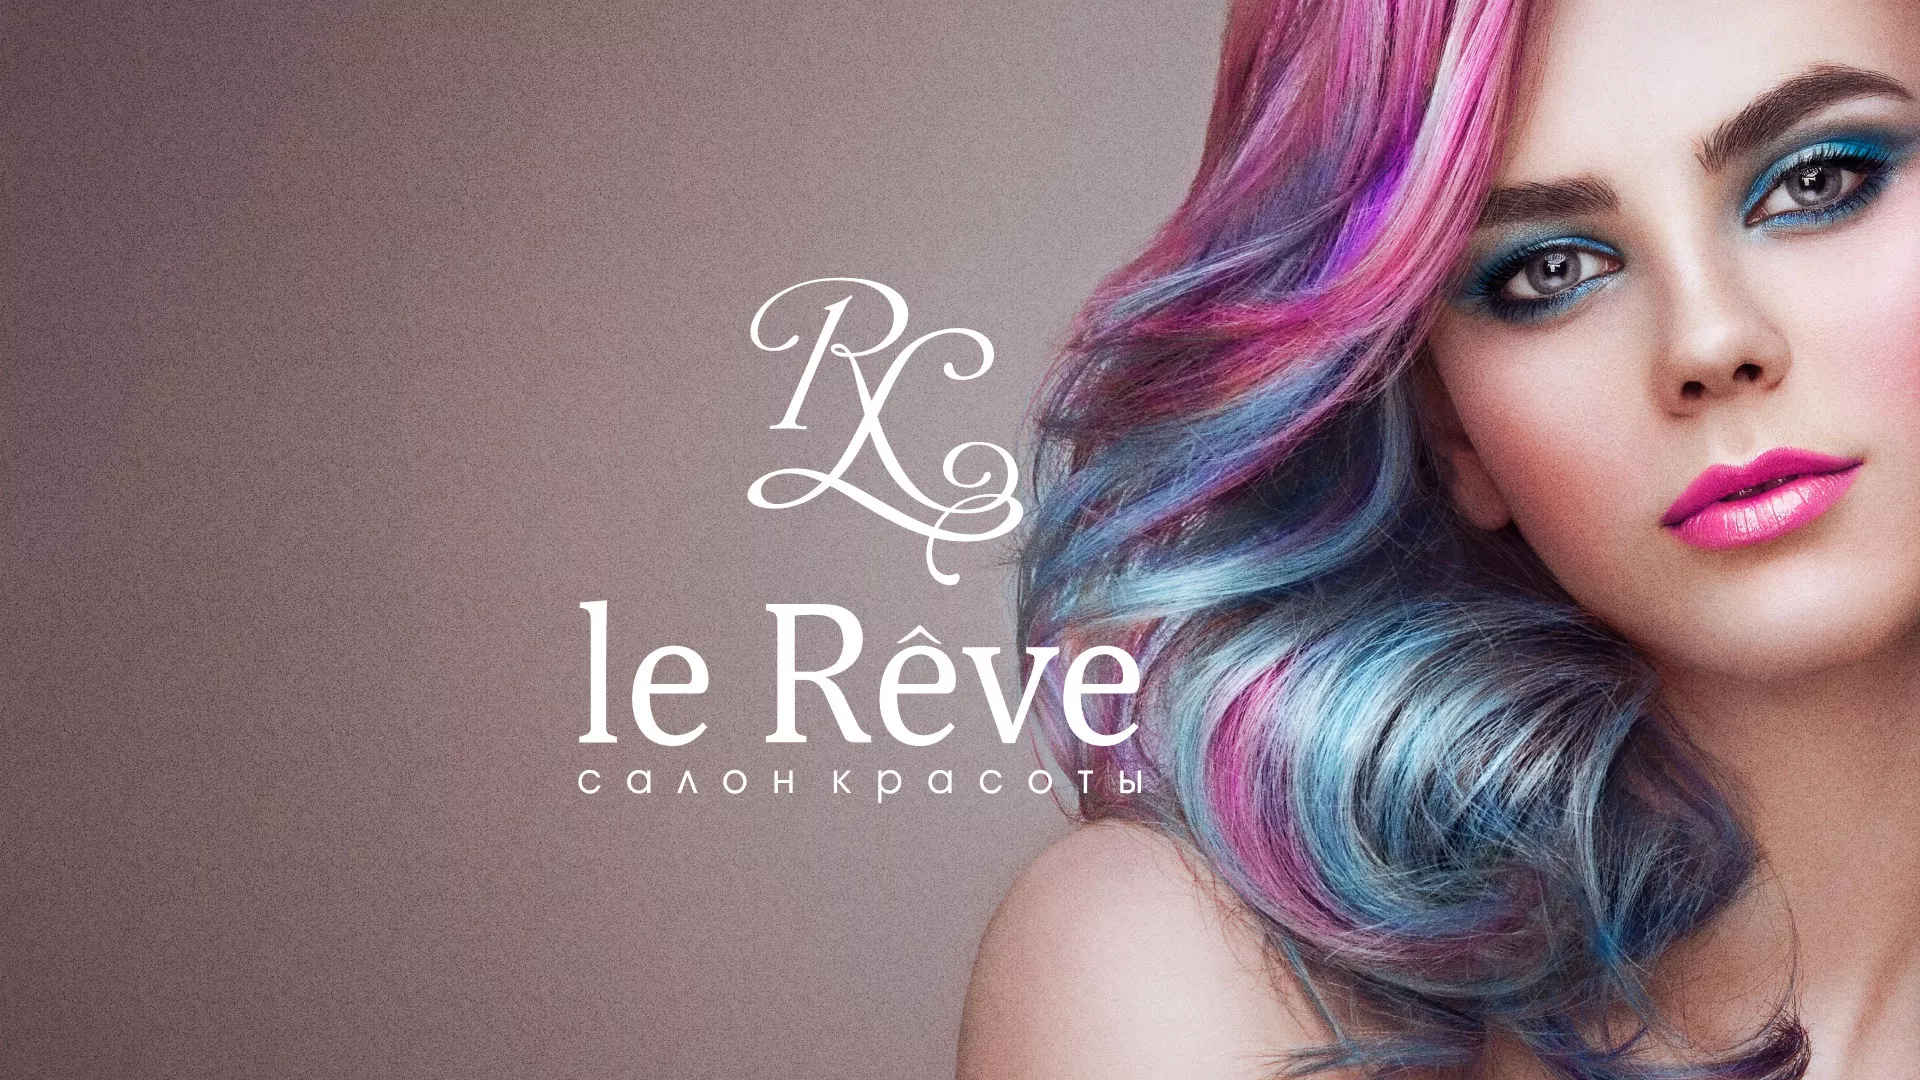 Создание сайта для салона красоты «Le Reve» в Домодедово